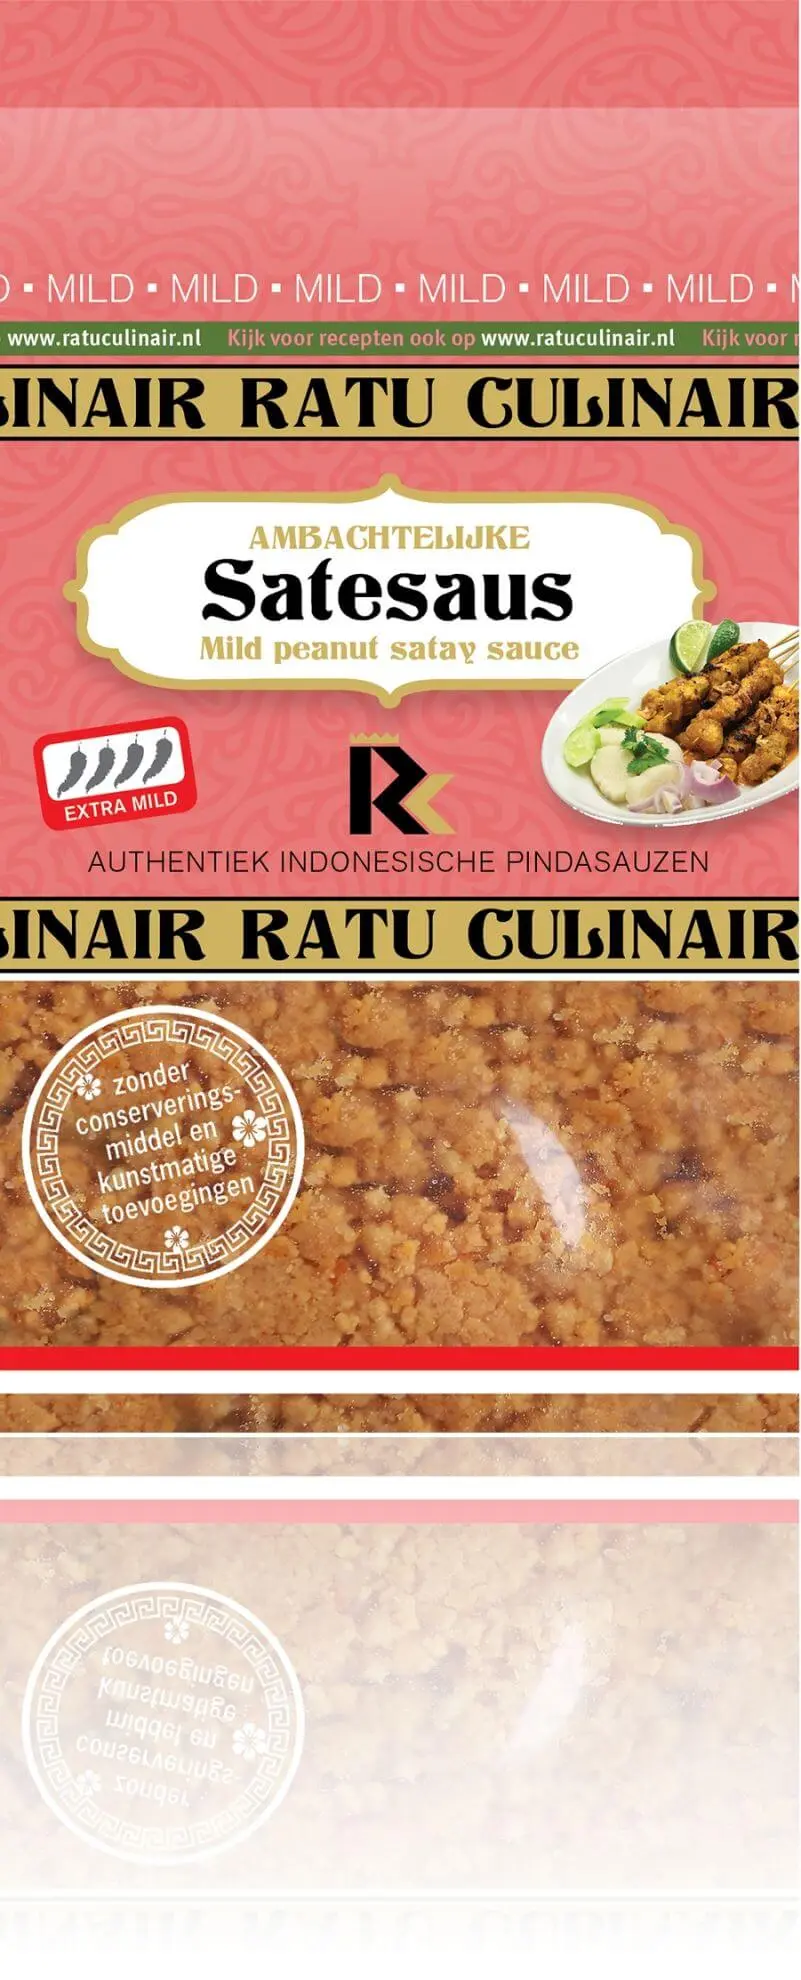 satesaus-ambachtelijke-ratu-culinair-glutenvrij